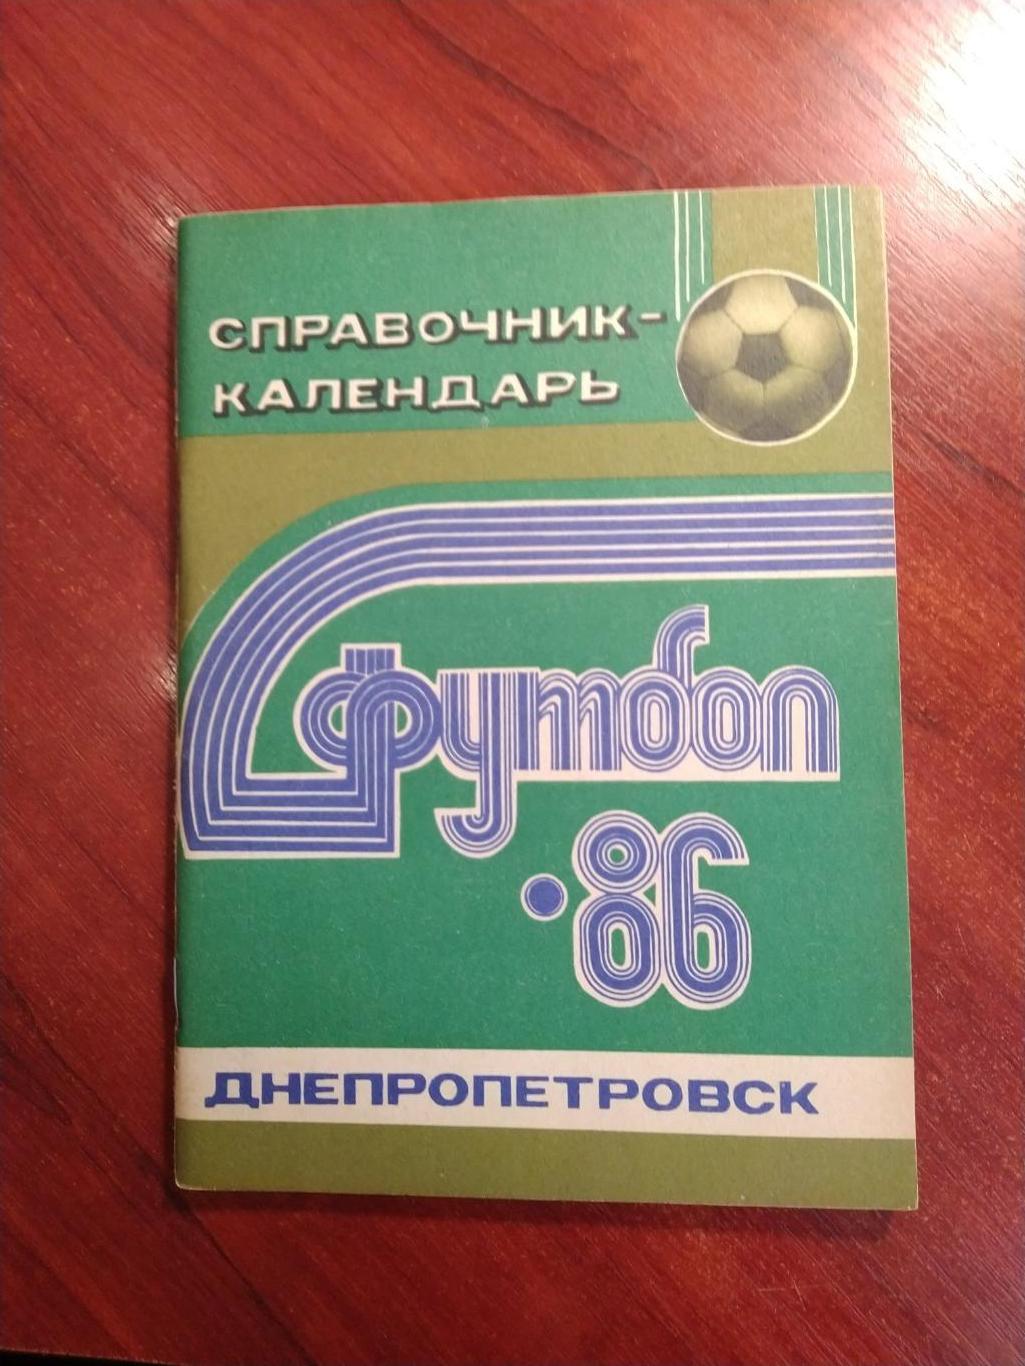 Справочник -календарь Футбол 1986 Днепропетровск